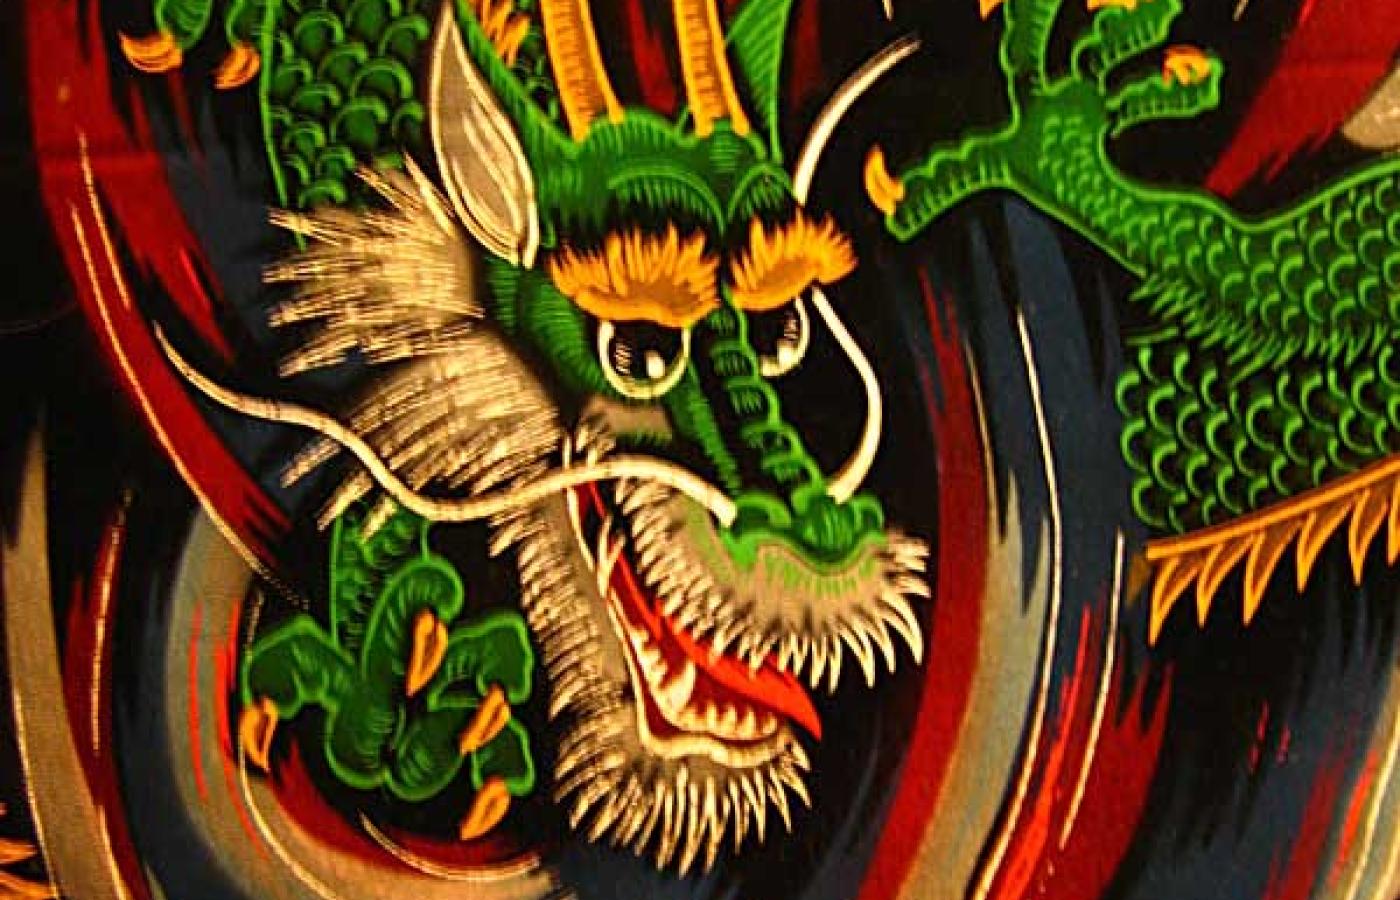 Niewykluczone, że na obraz smoka w średniowieczu miał wpływ smok chiński. Fot. miheco, Flickr, CC by SA